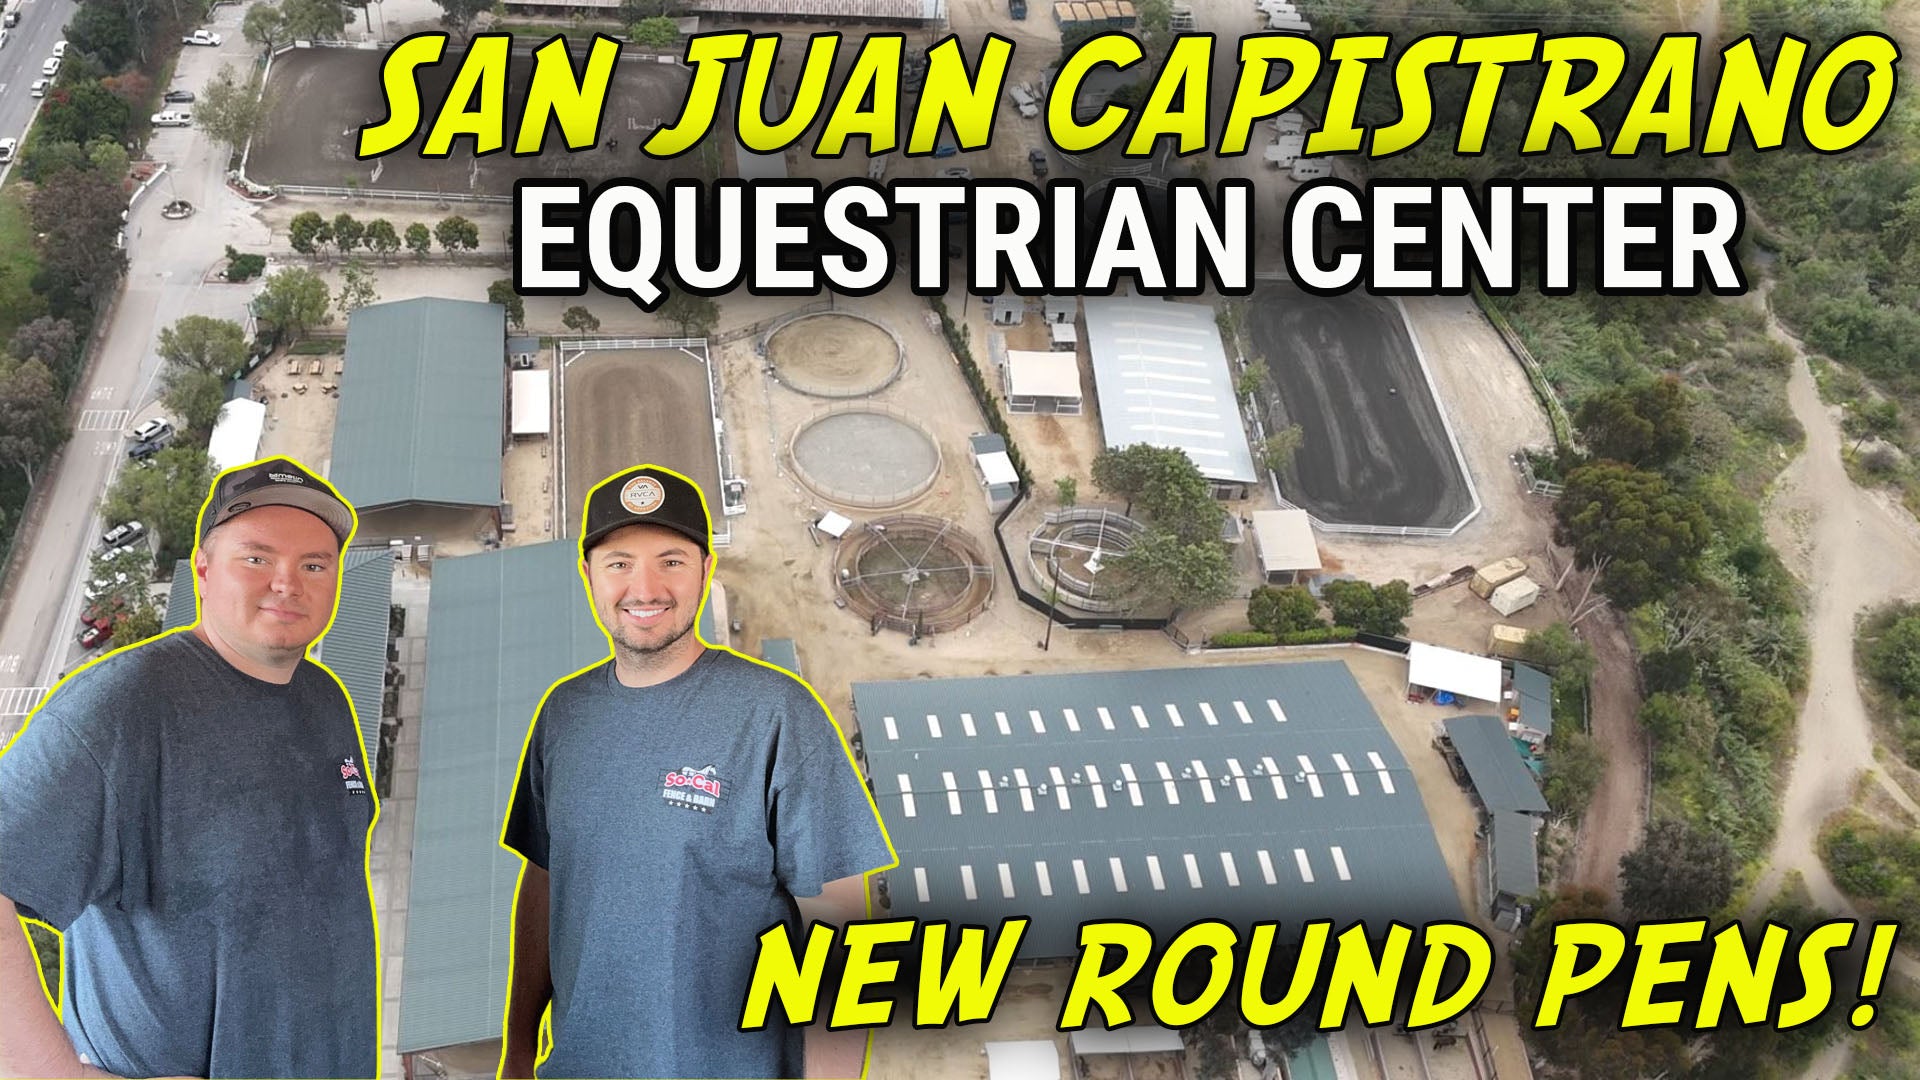 New Round Pens For The San Juan Capistrano Equestrian Center!